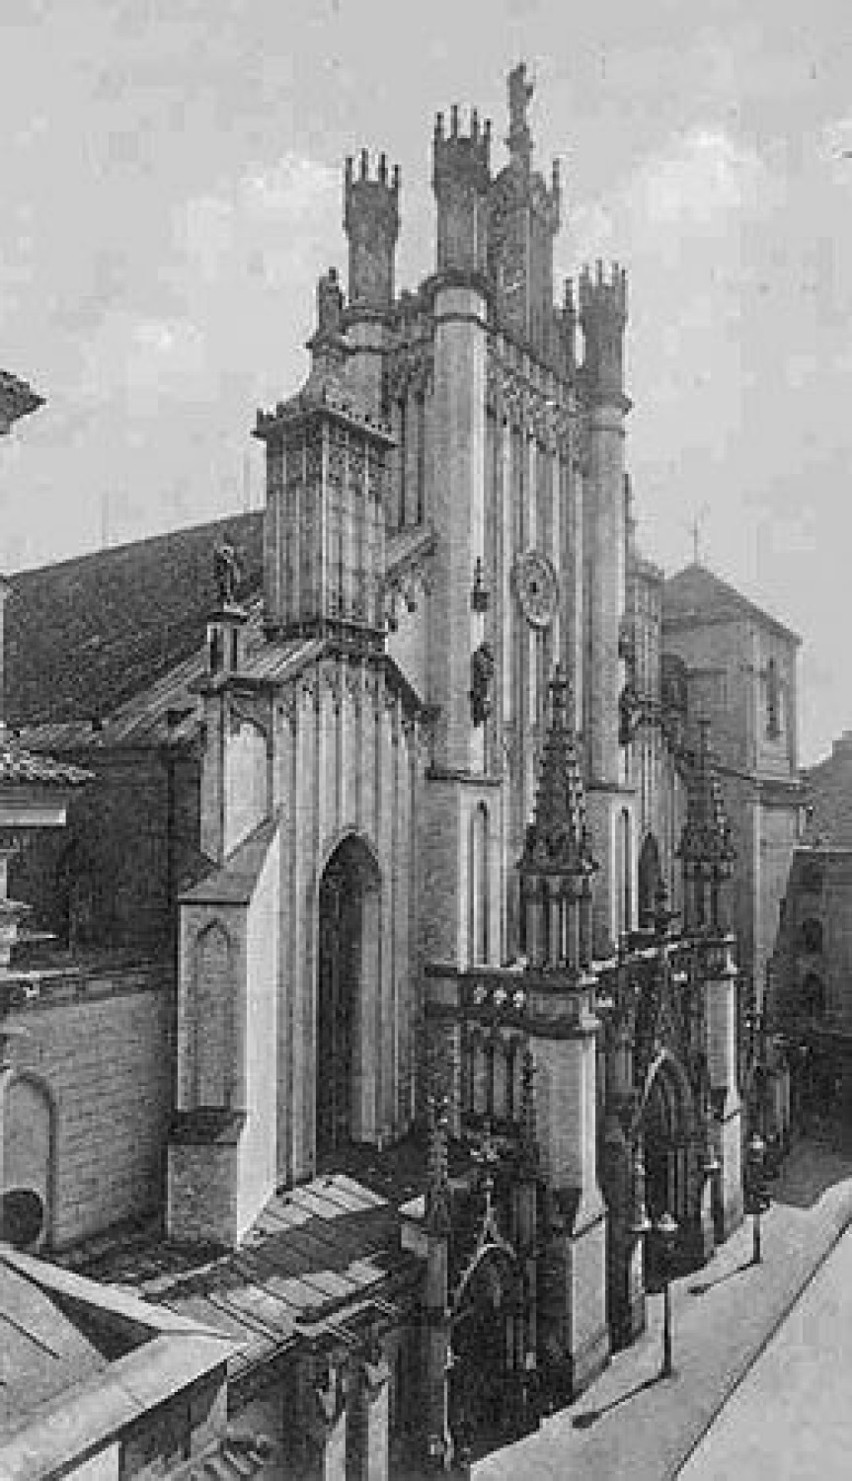 Katedra w stylu neogotyckim przed 1939 rokiem